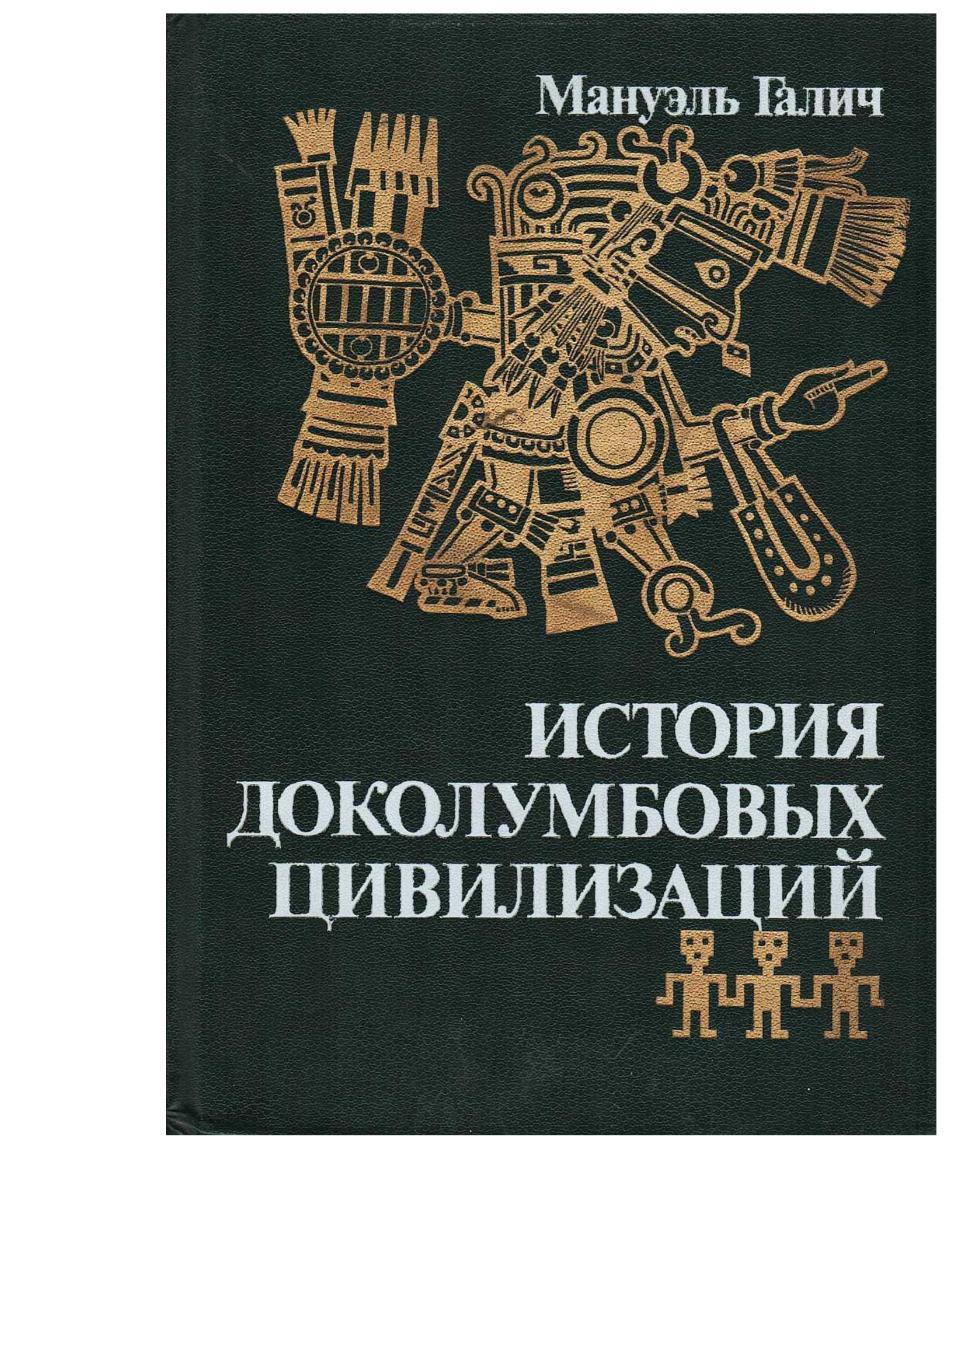 Галич М. История доколумбовых цивилизаций. – М., 1990.